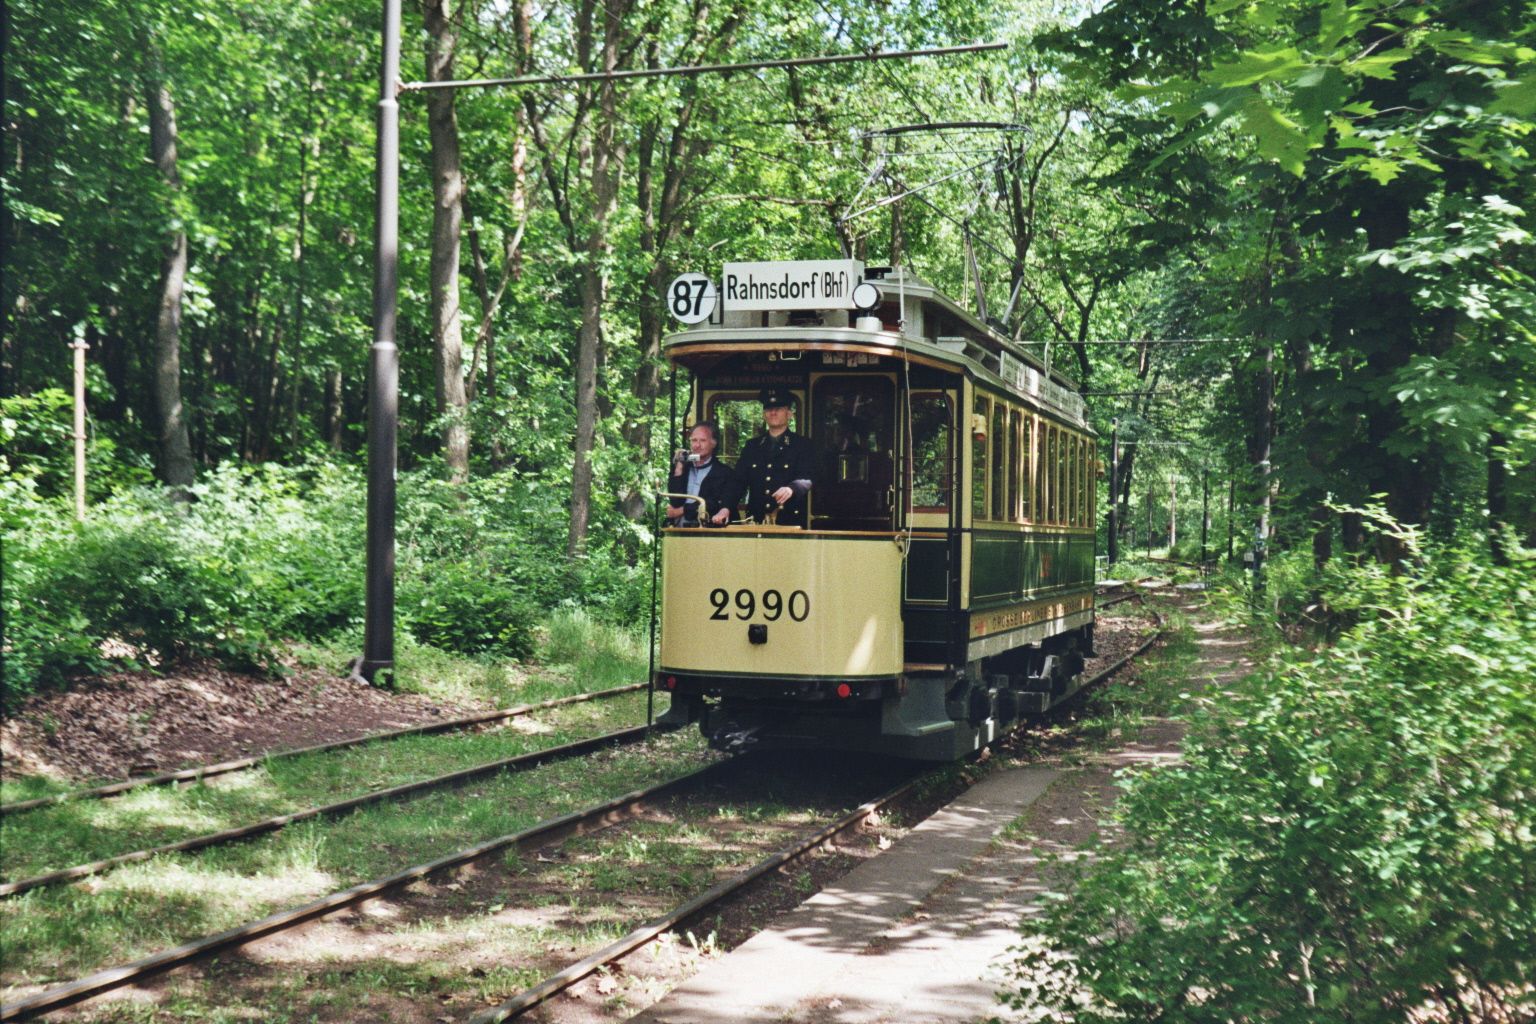 Woltersdorfer Straßenbahn__Durch den Wald ... Maximum-Tw 2990 von Woltersdorf kommend kurz vor Rahnsdorf. Im Vergleich zu den meisten Fahrzeugen in der zweiten Hälfte des 20. Jahrhunderts hatten sie damals wirklich gut lesbare Ziel- und Linientafeln ... __23-05-2009